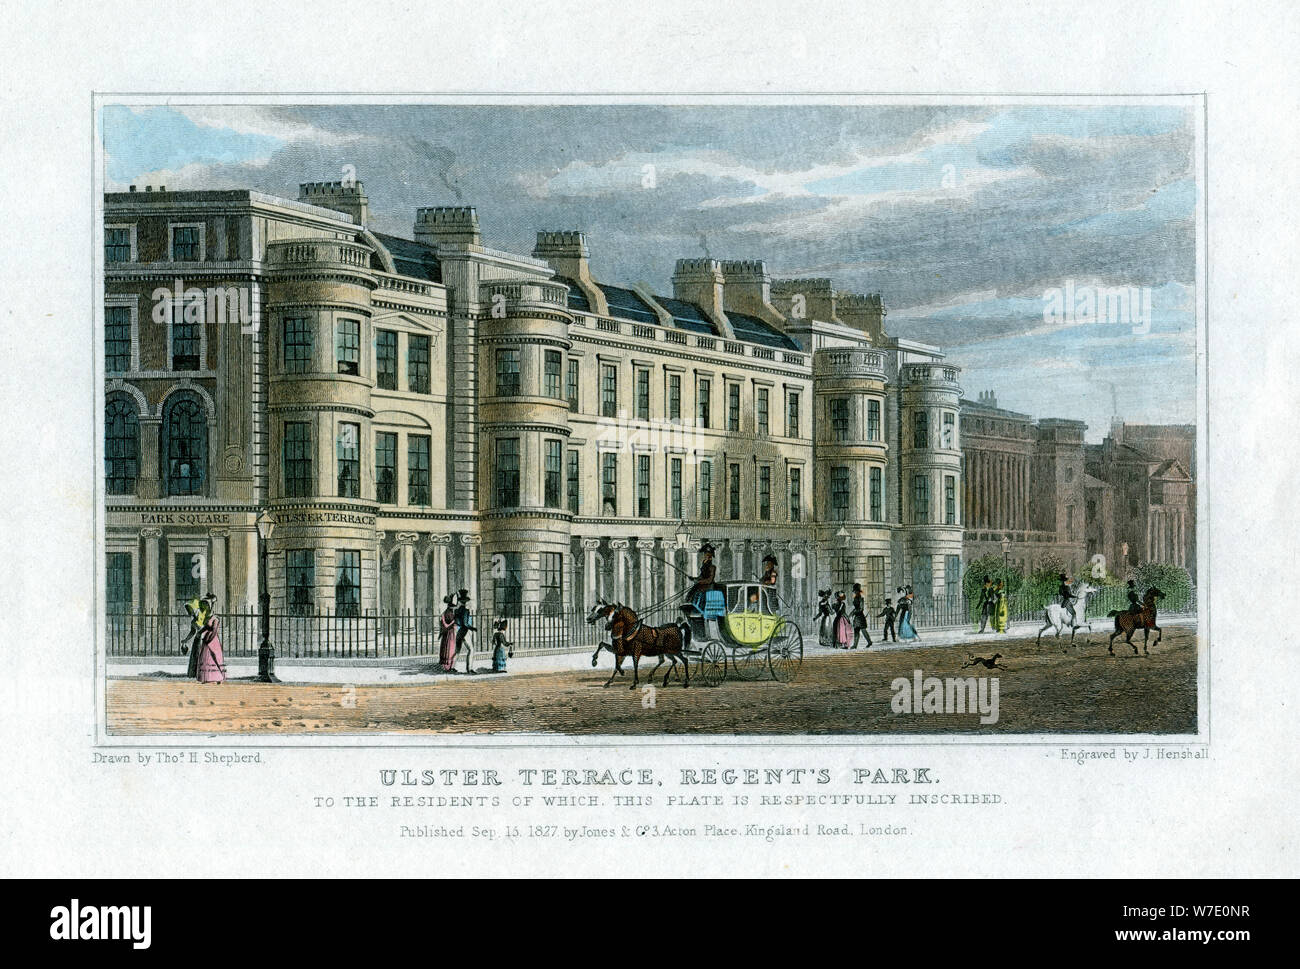 Terrasse de l'Ulster, Regent's Park, Londres, 1827. Artiste : J Henshall Banque D'Images